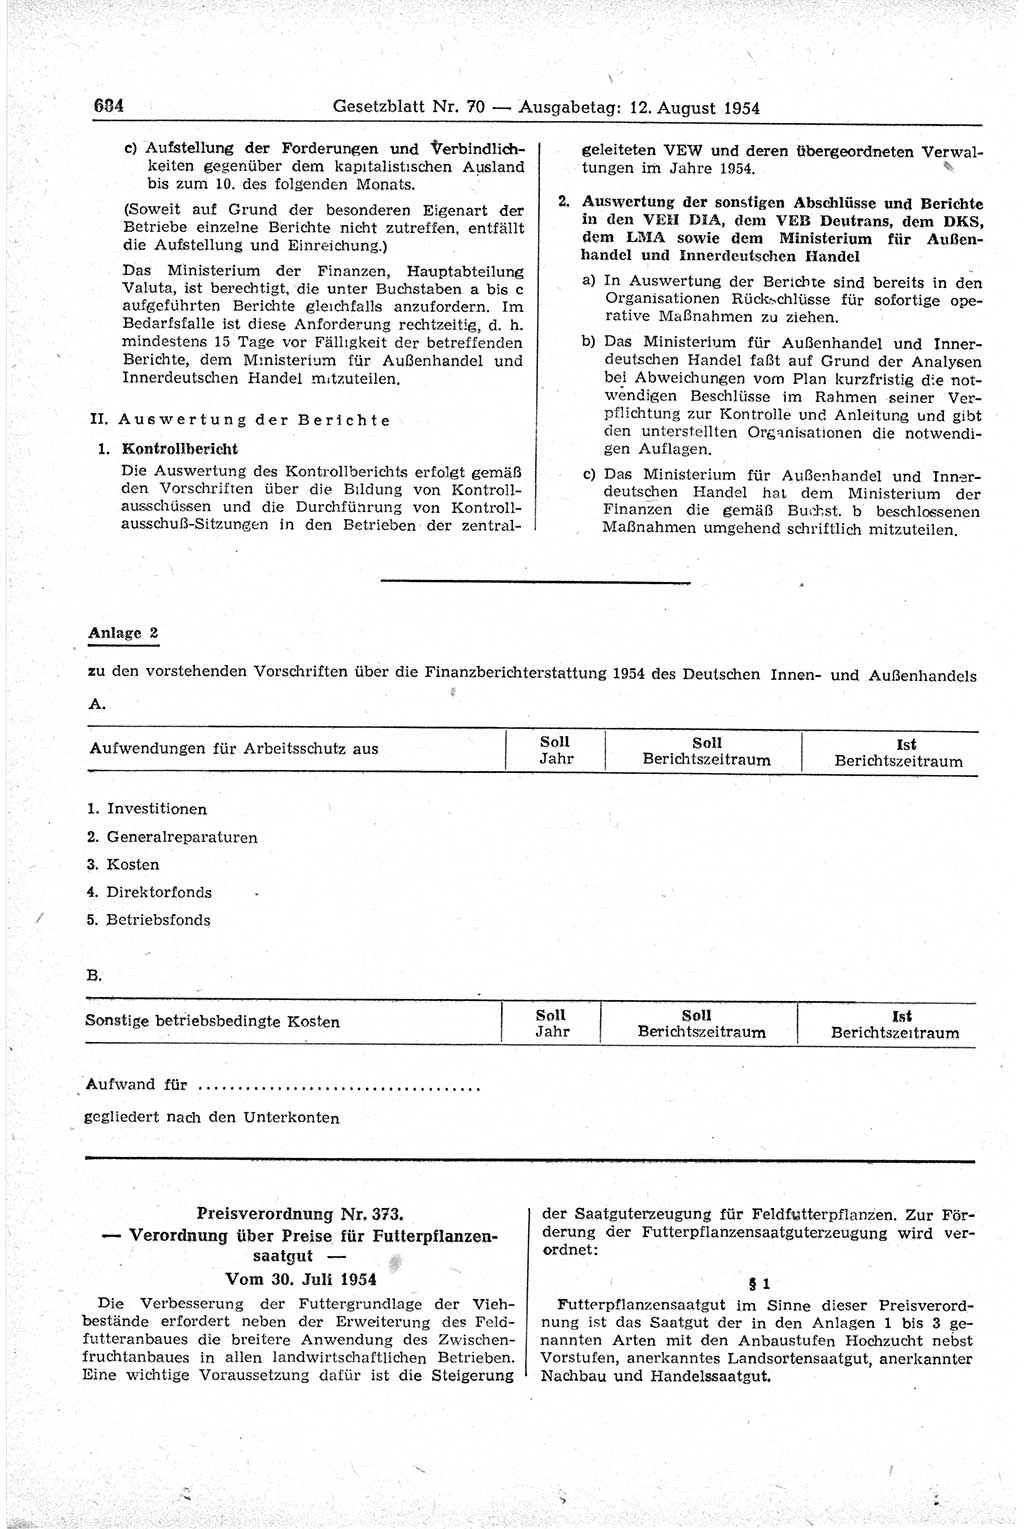 Gesetzblatt (GBl.) der Deutschen Demokratischen Republik (DDR) 1954, Seite 684 (GBl. DDR 1954, S. 684)